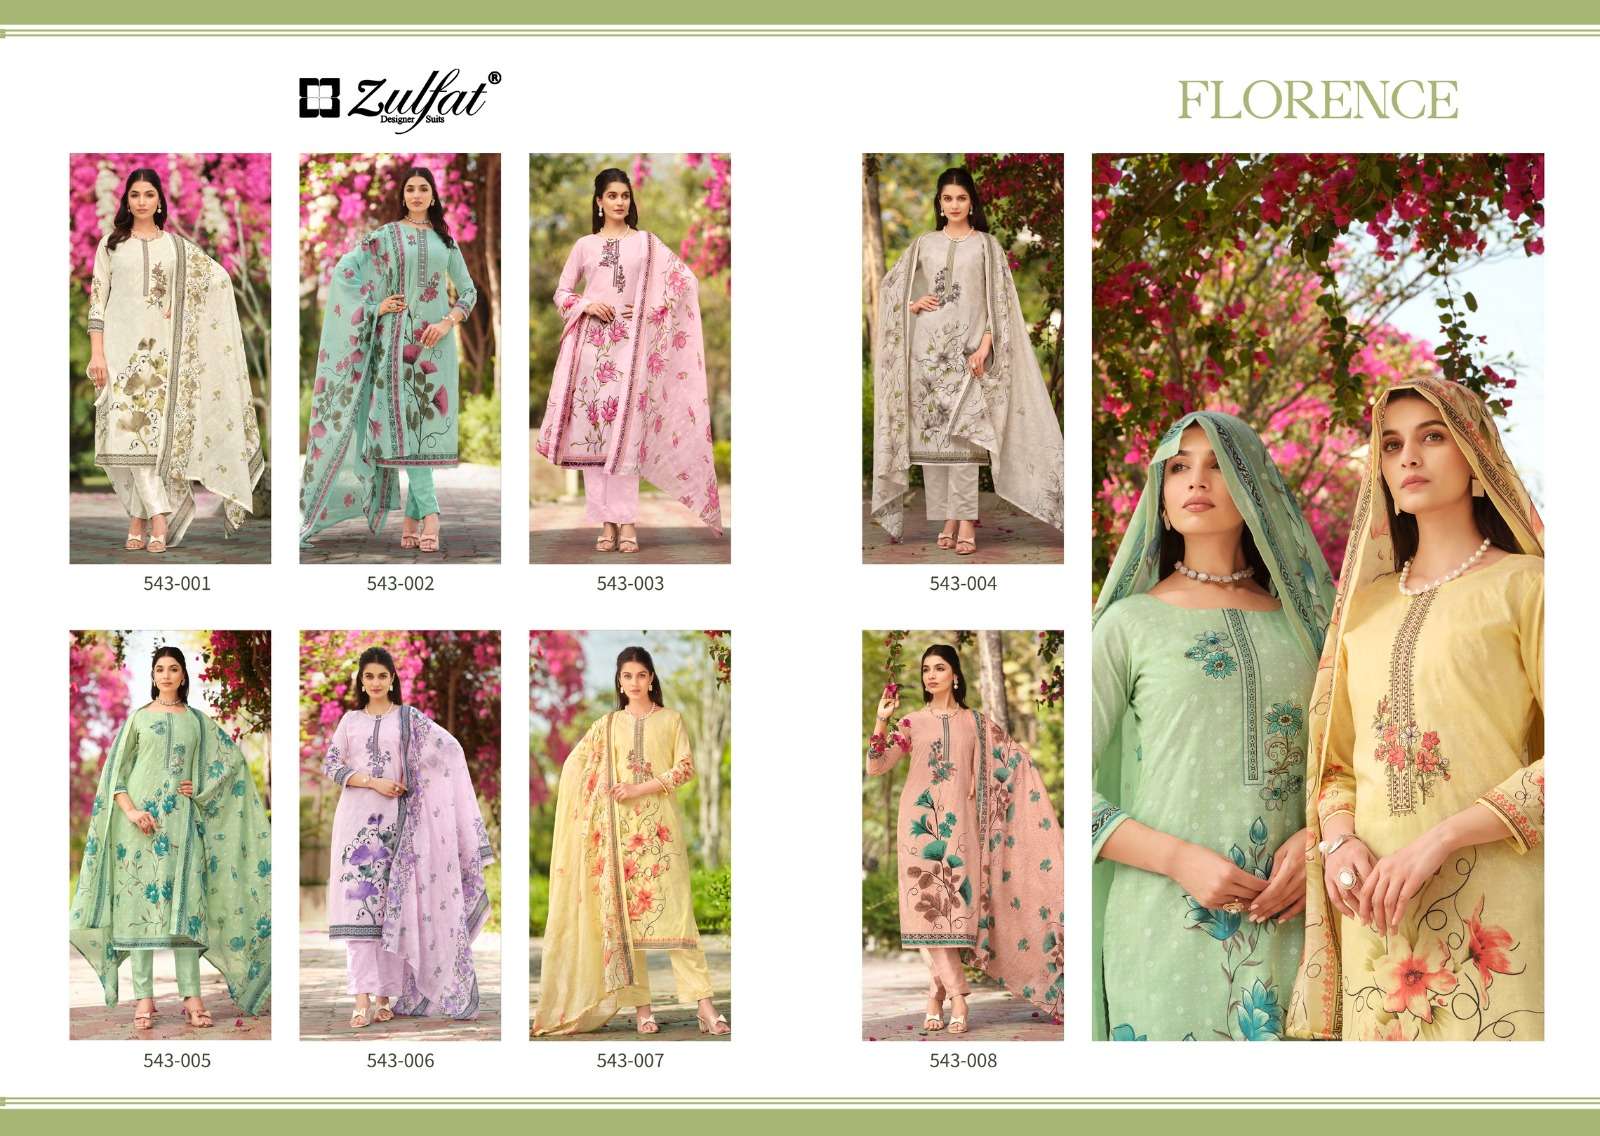 zulfat designer suits  cotton exclusive look salwar suit catalog